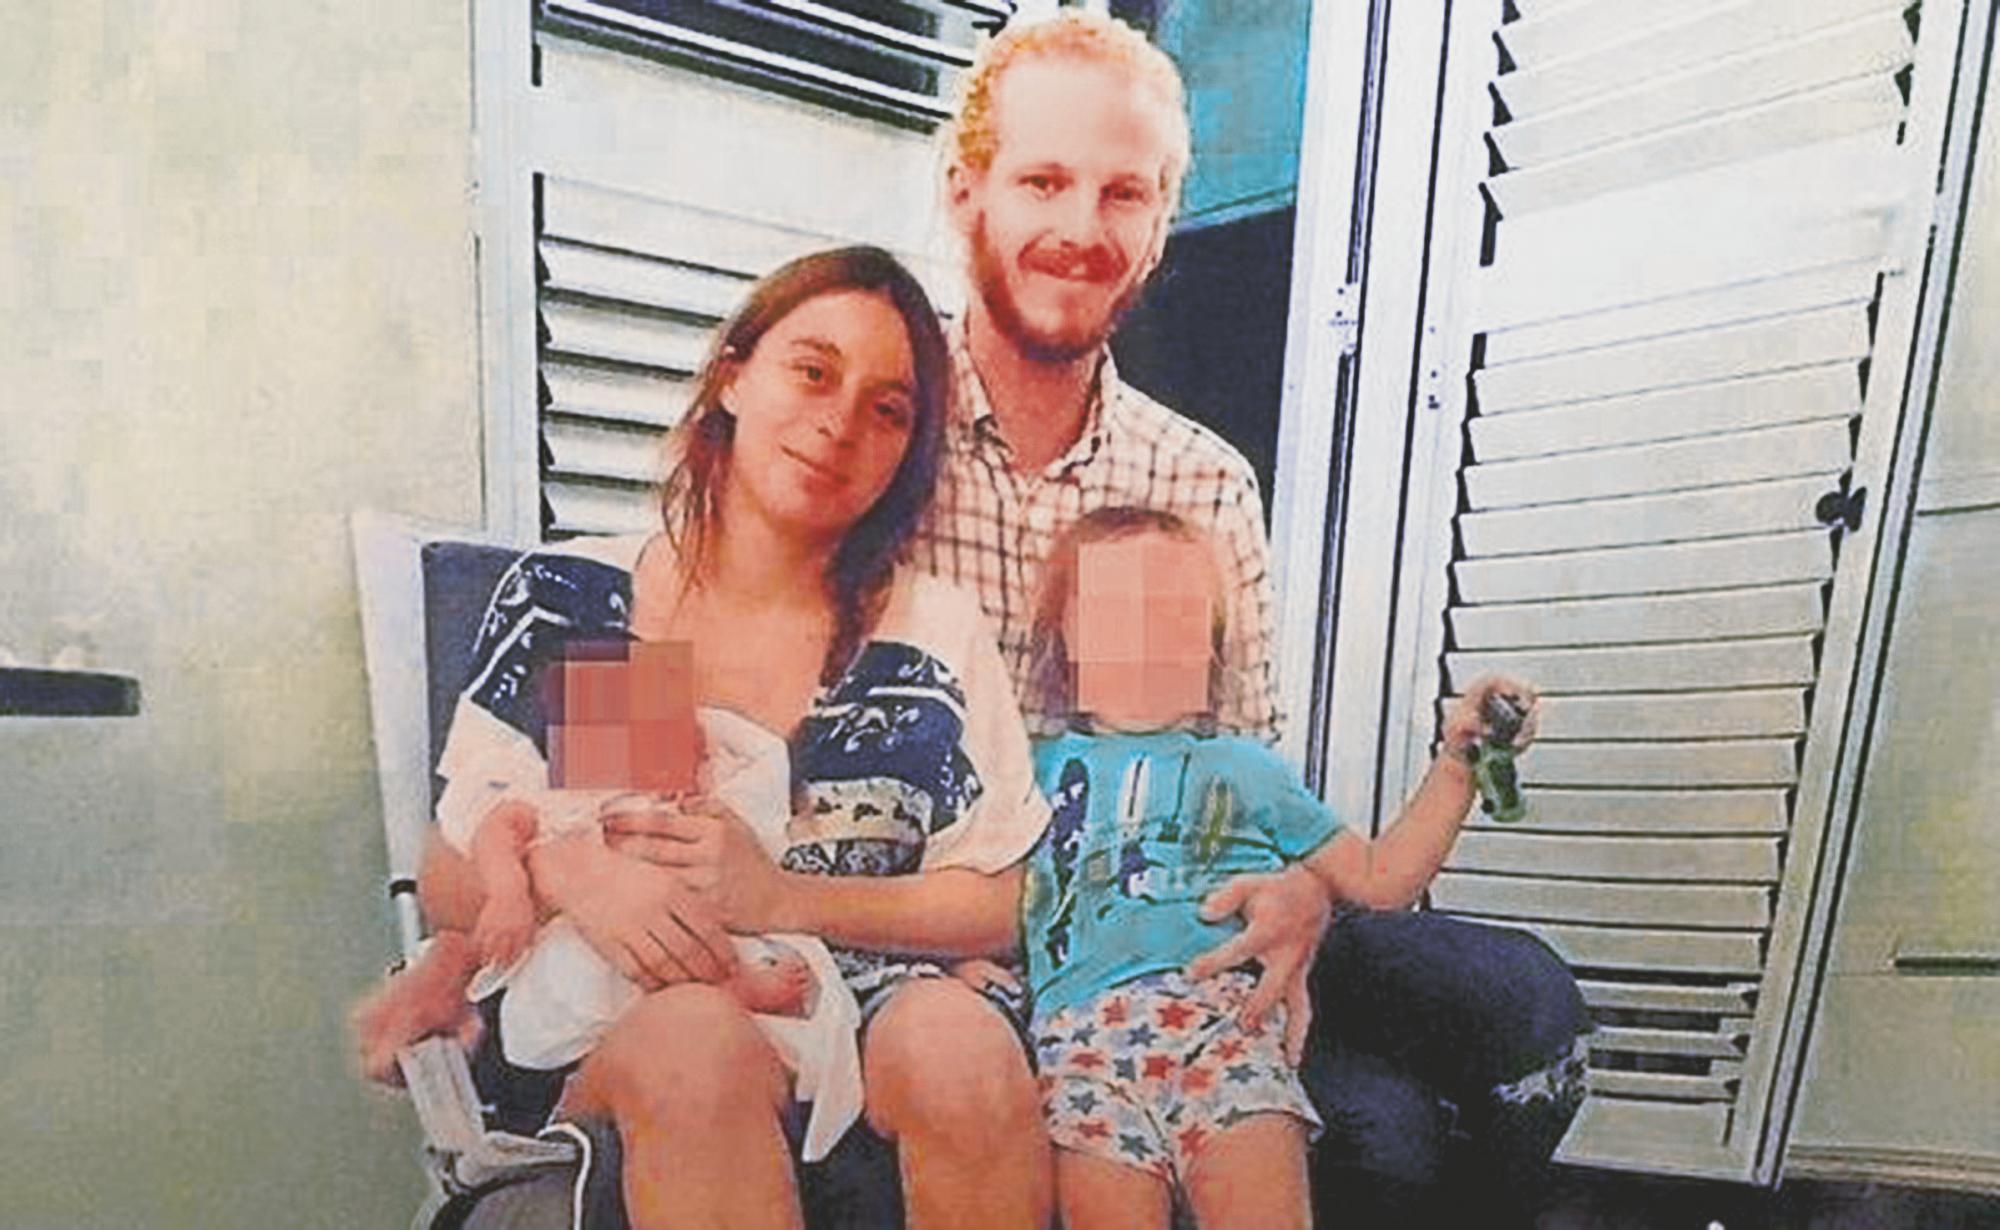 Espanha chocada com caso de mãe que espancou filhos até à morte e que os enterrou-os perto de casa